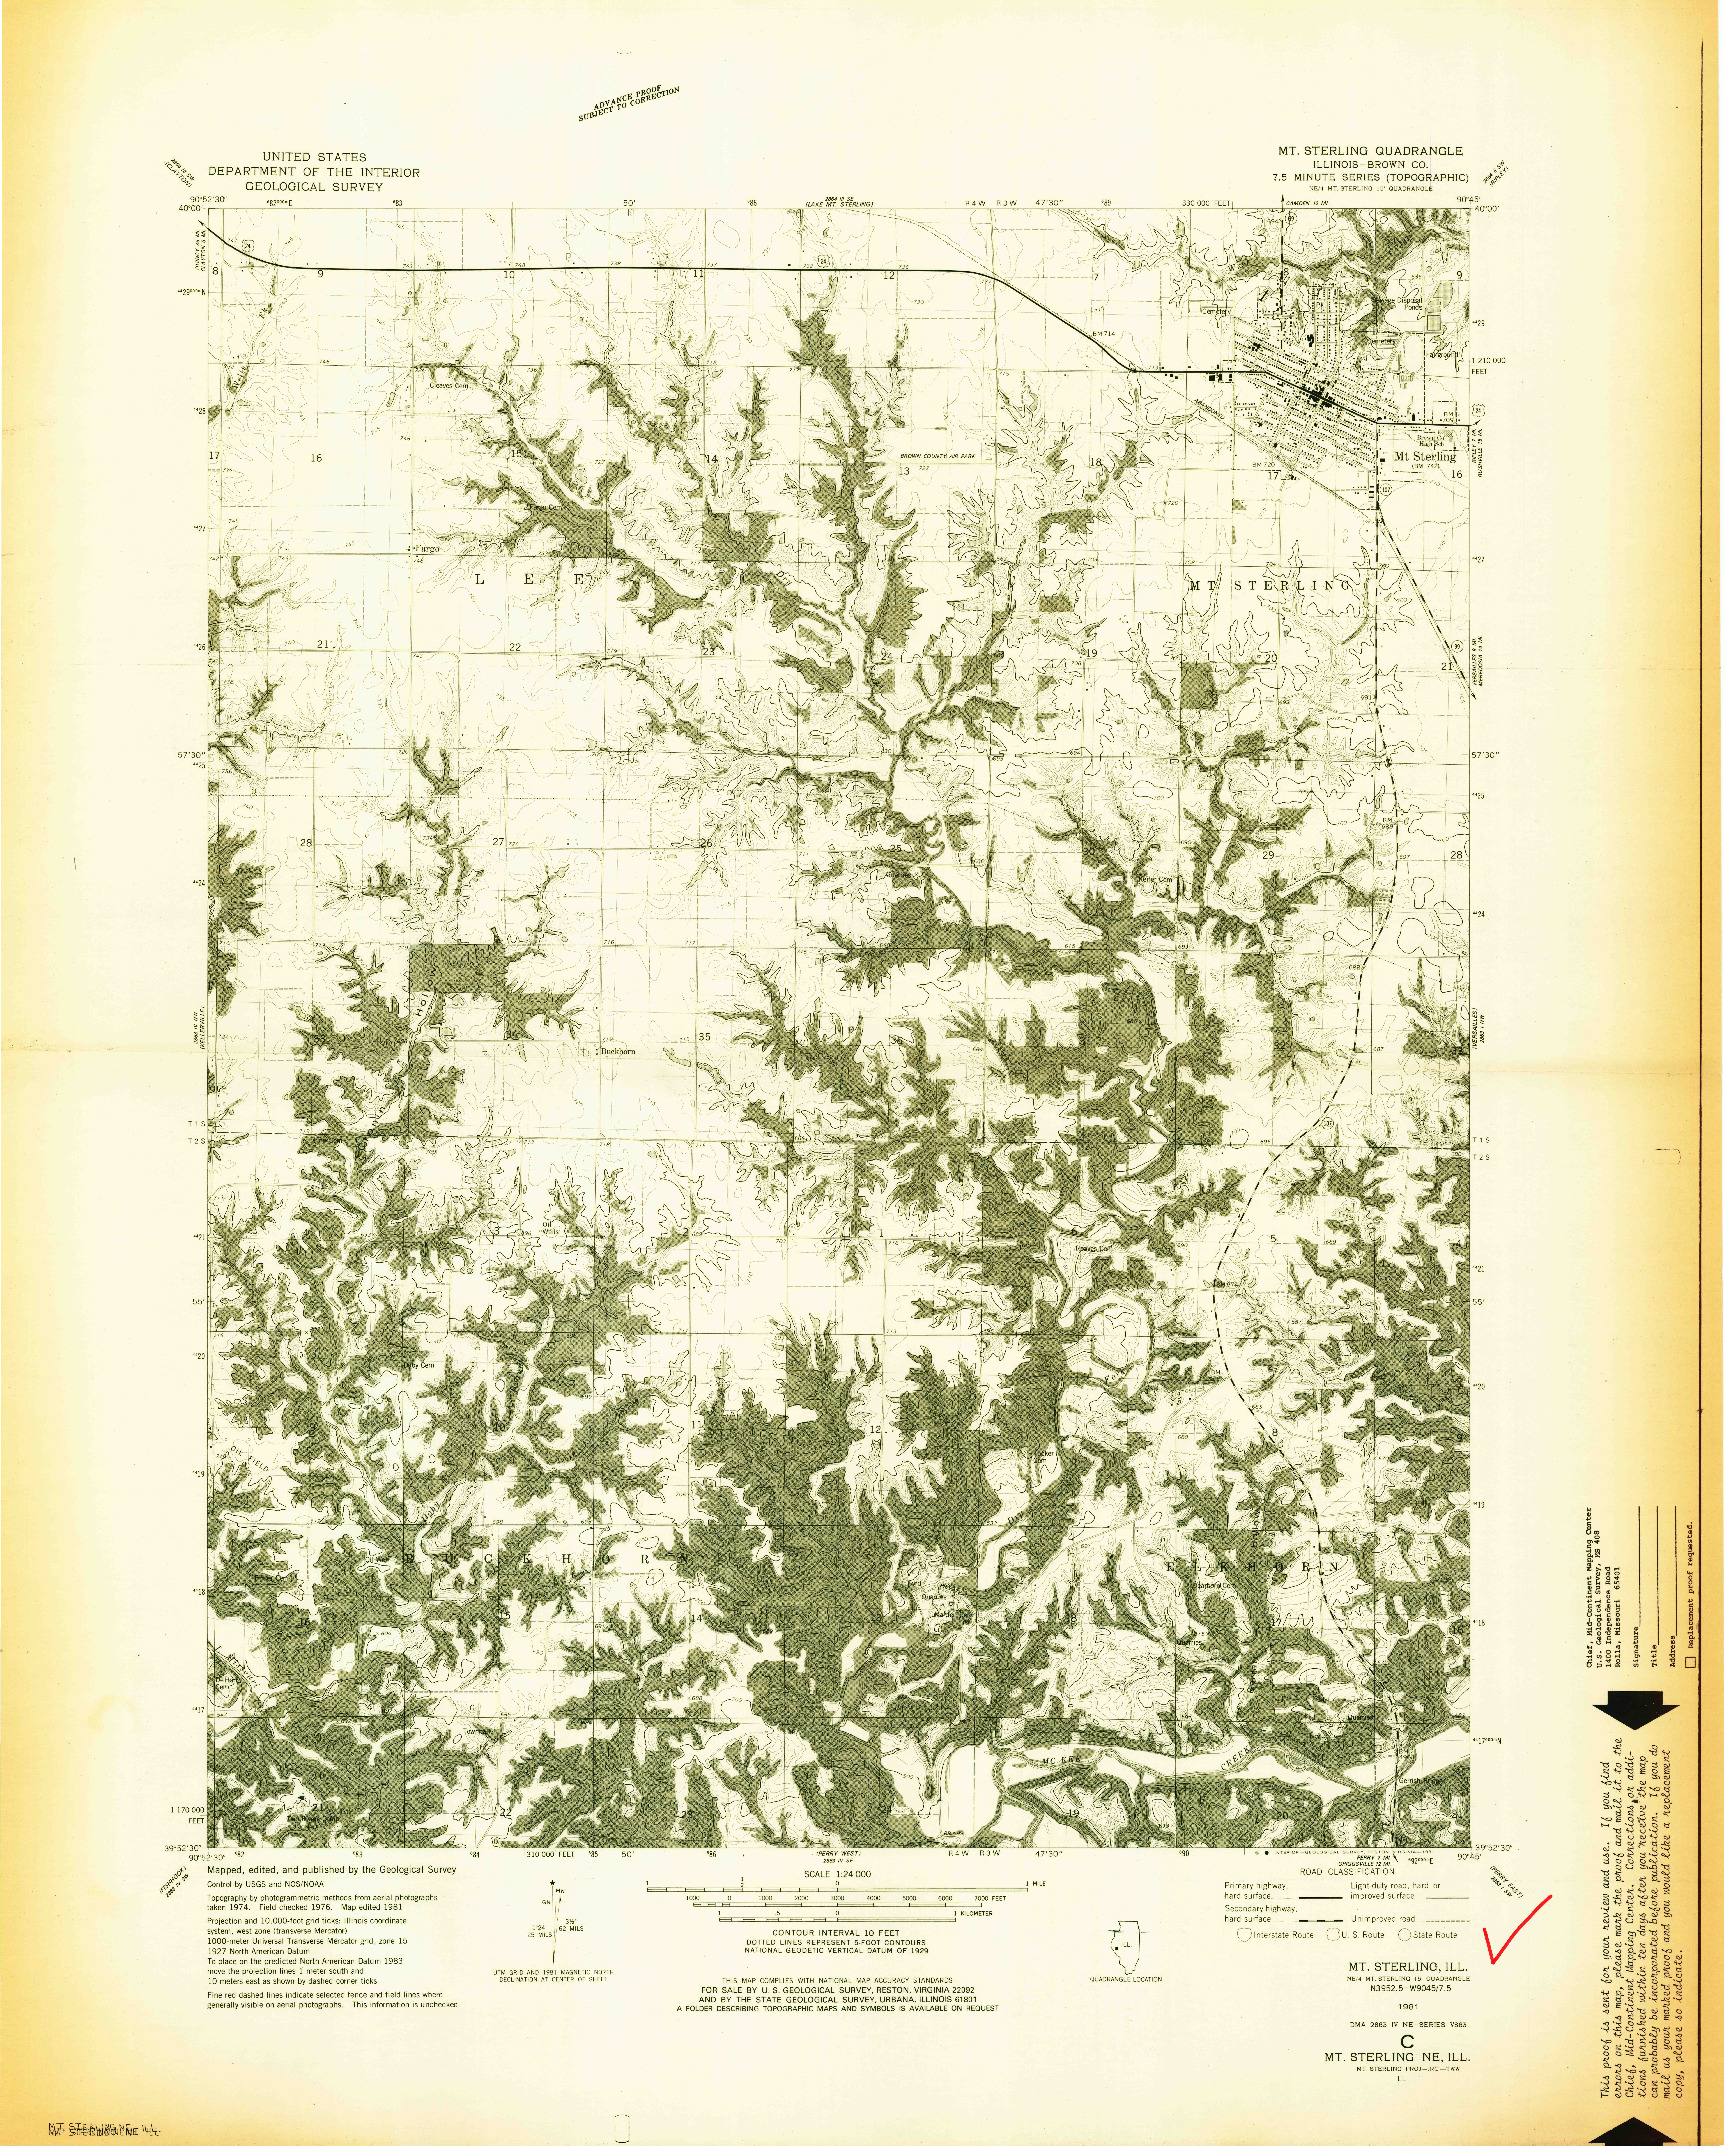 USGS 1:24000-SCALE QUADRANGLE FOR MT STERLING, IL 1981